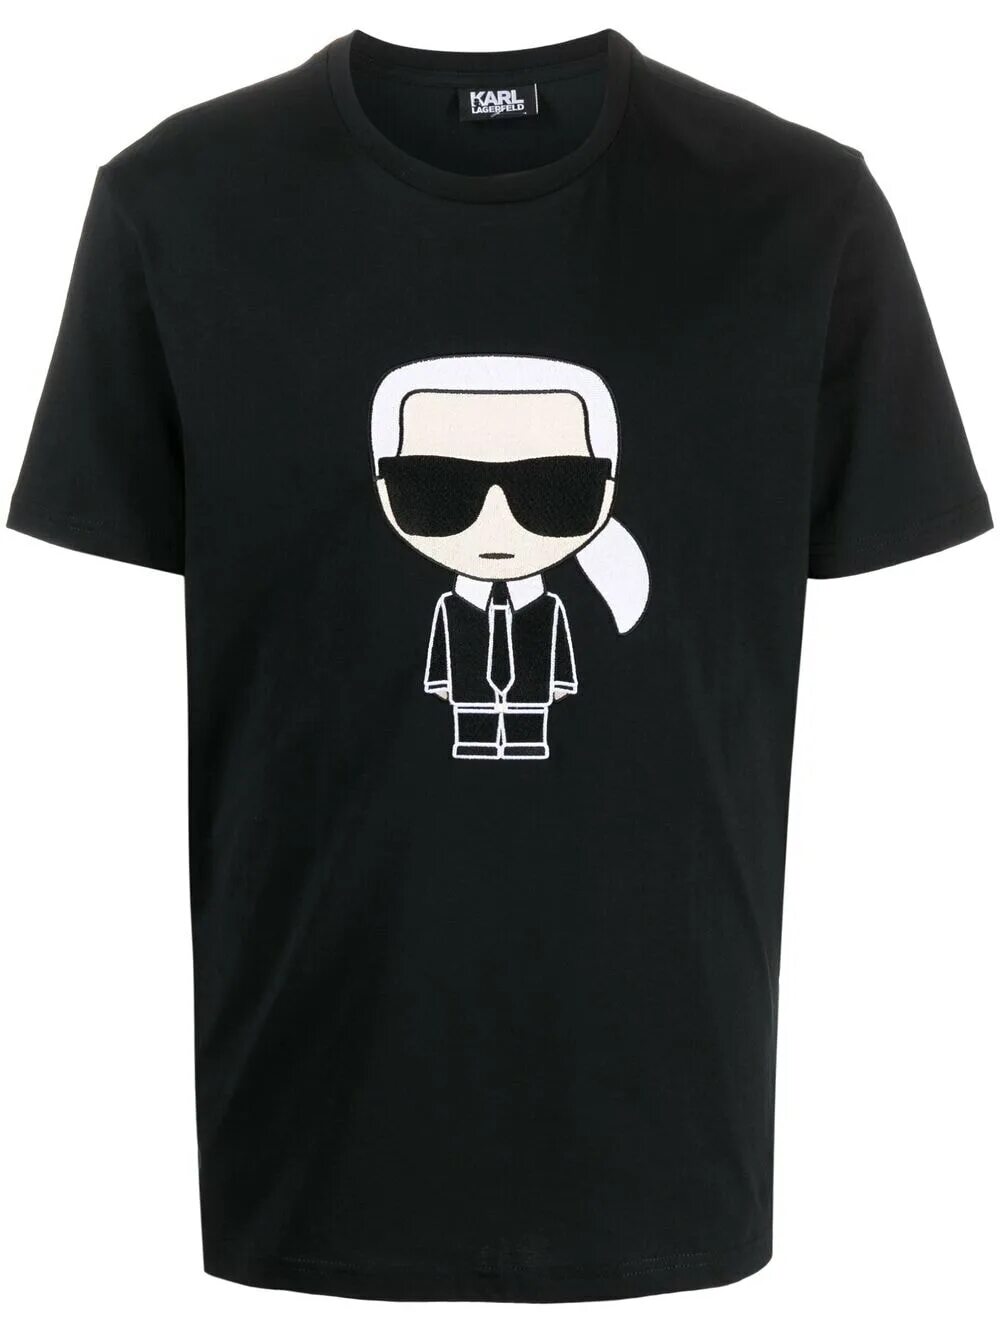 Karl Lagerfeld футболка. Karl Lagerfeld футболка черная. Karl Lagerfeld футболка мужская. Футболки лагерфельд купить